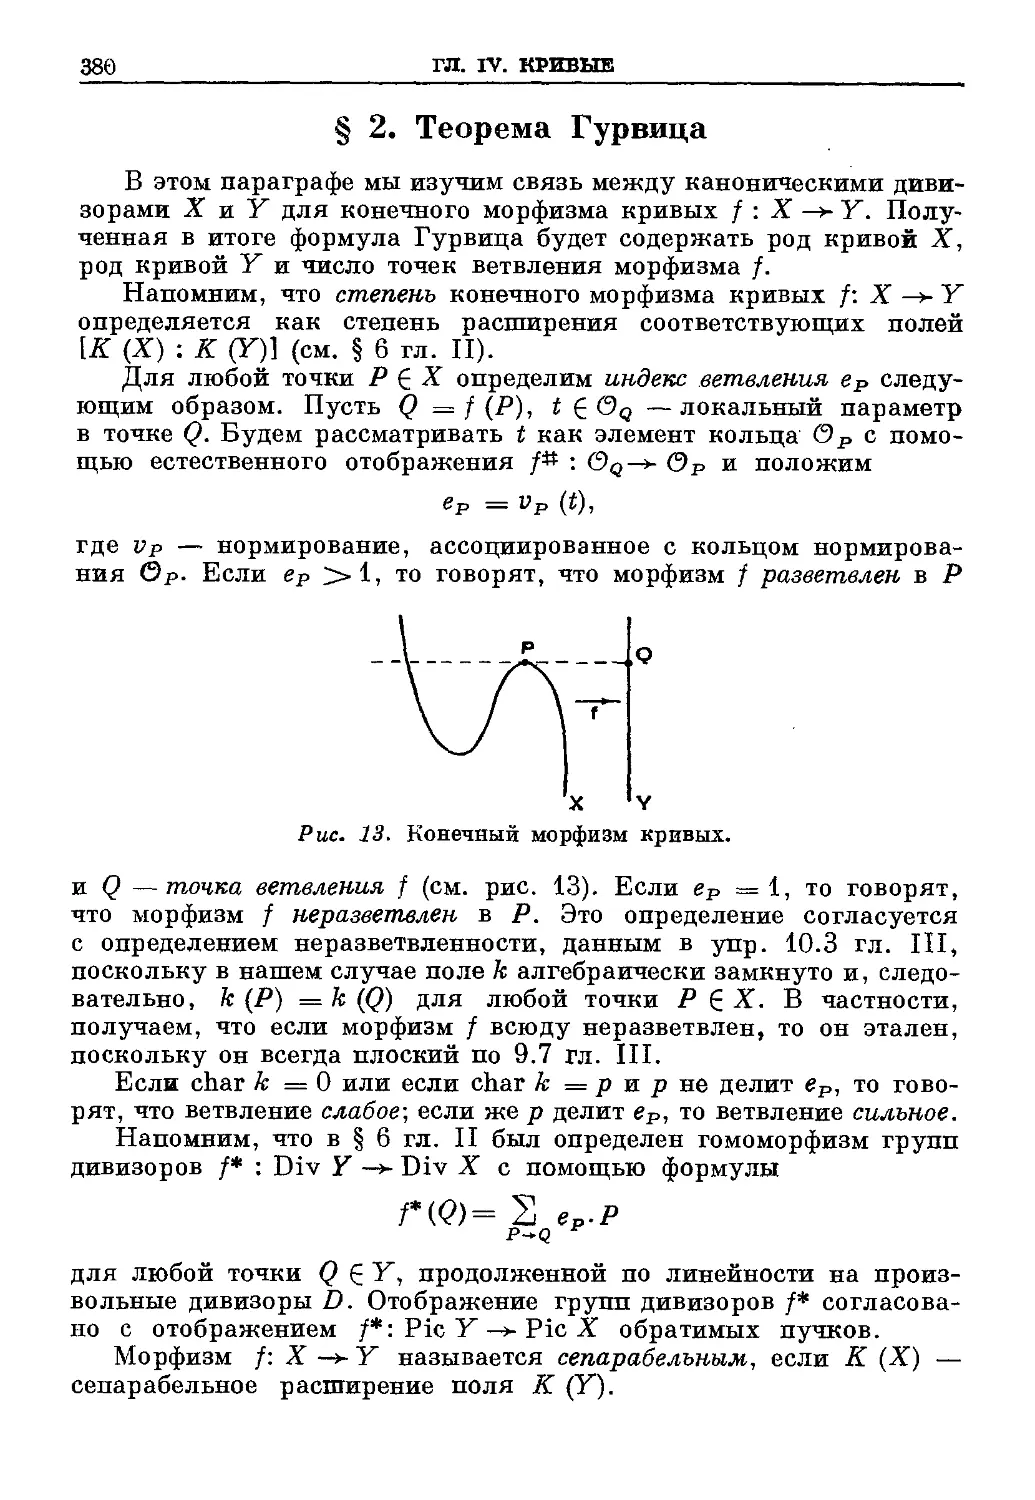 § 2. Теорема Гурвица